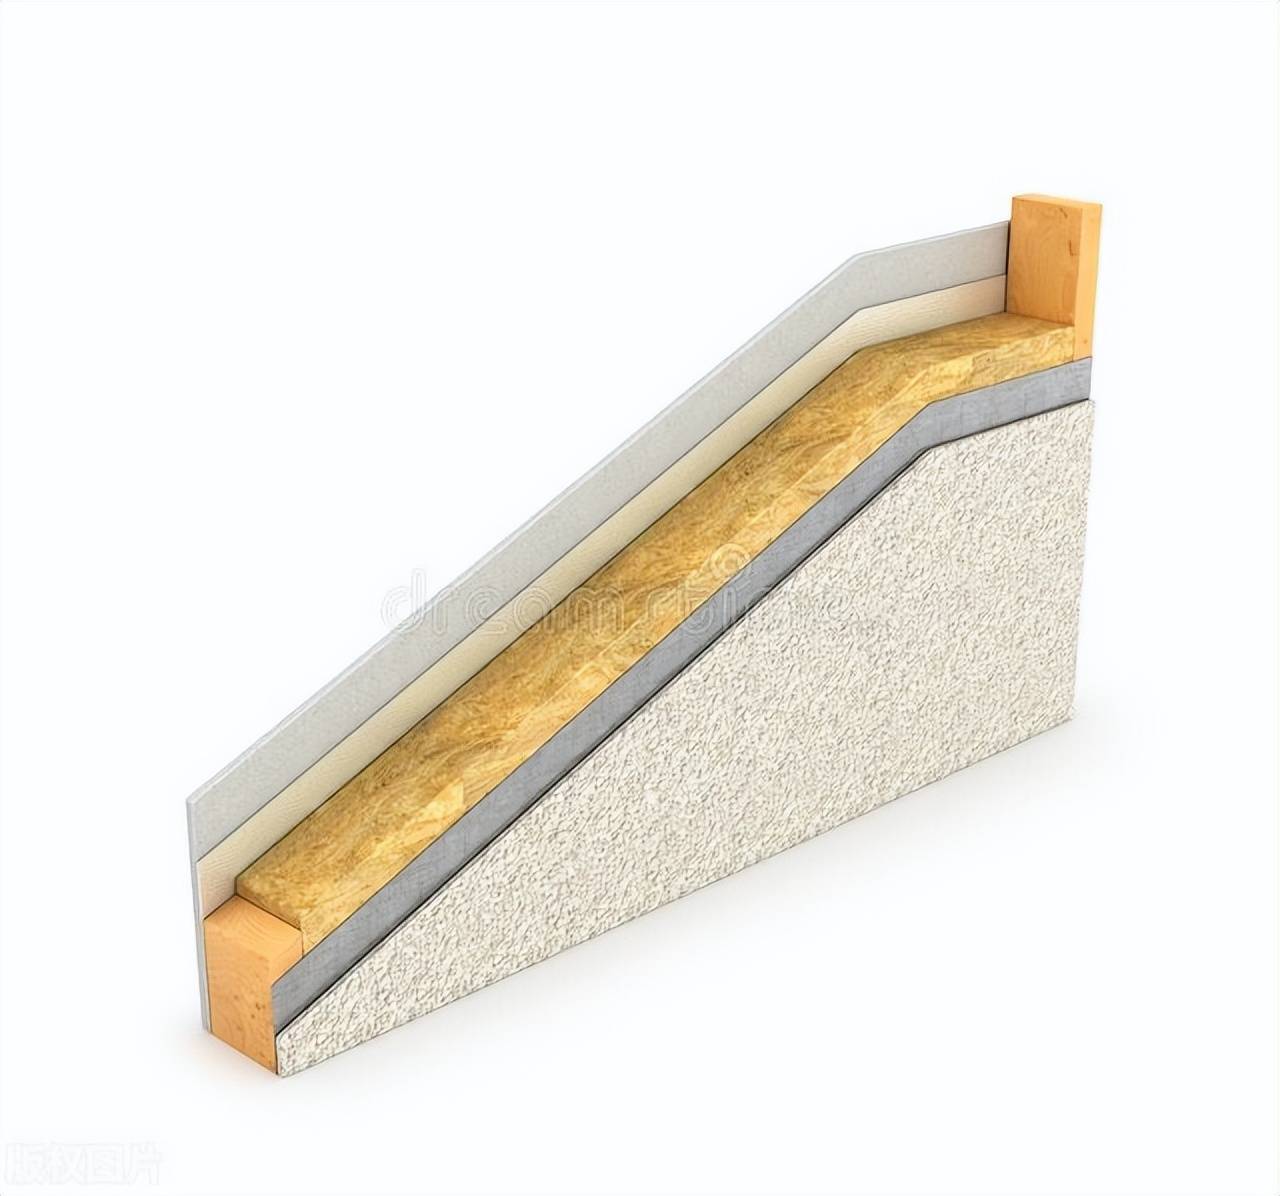 真空超薄绝热保温板和外墙保温装饰一体板什么区别?